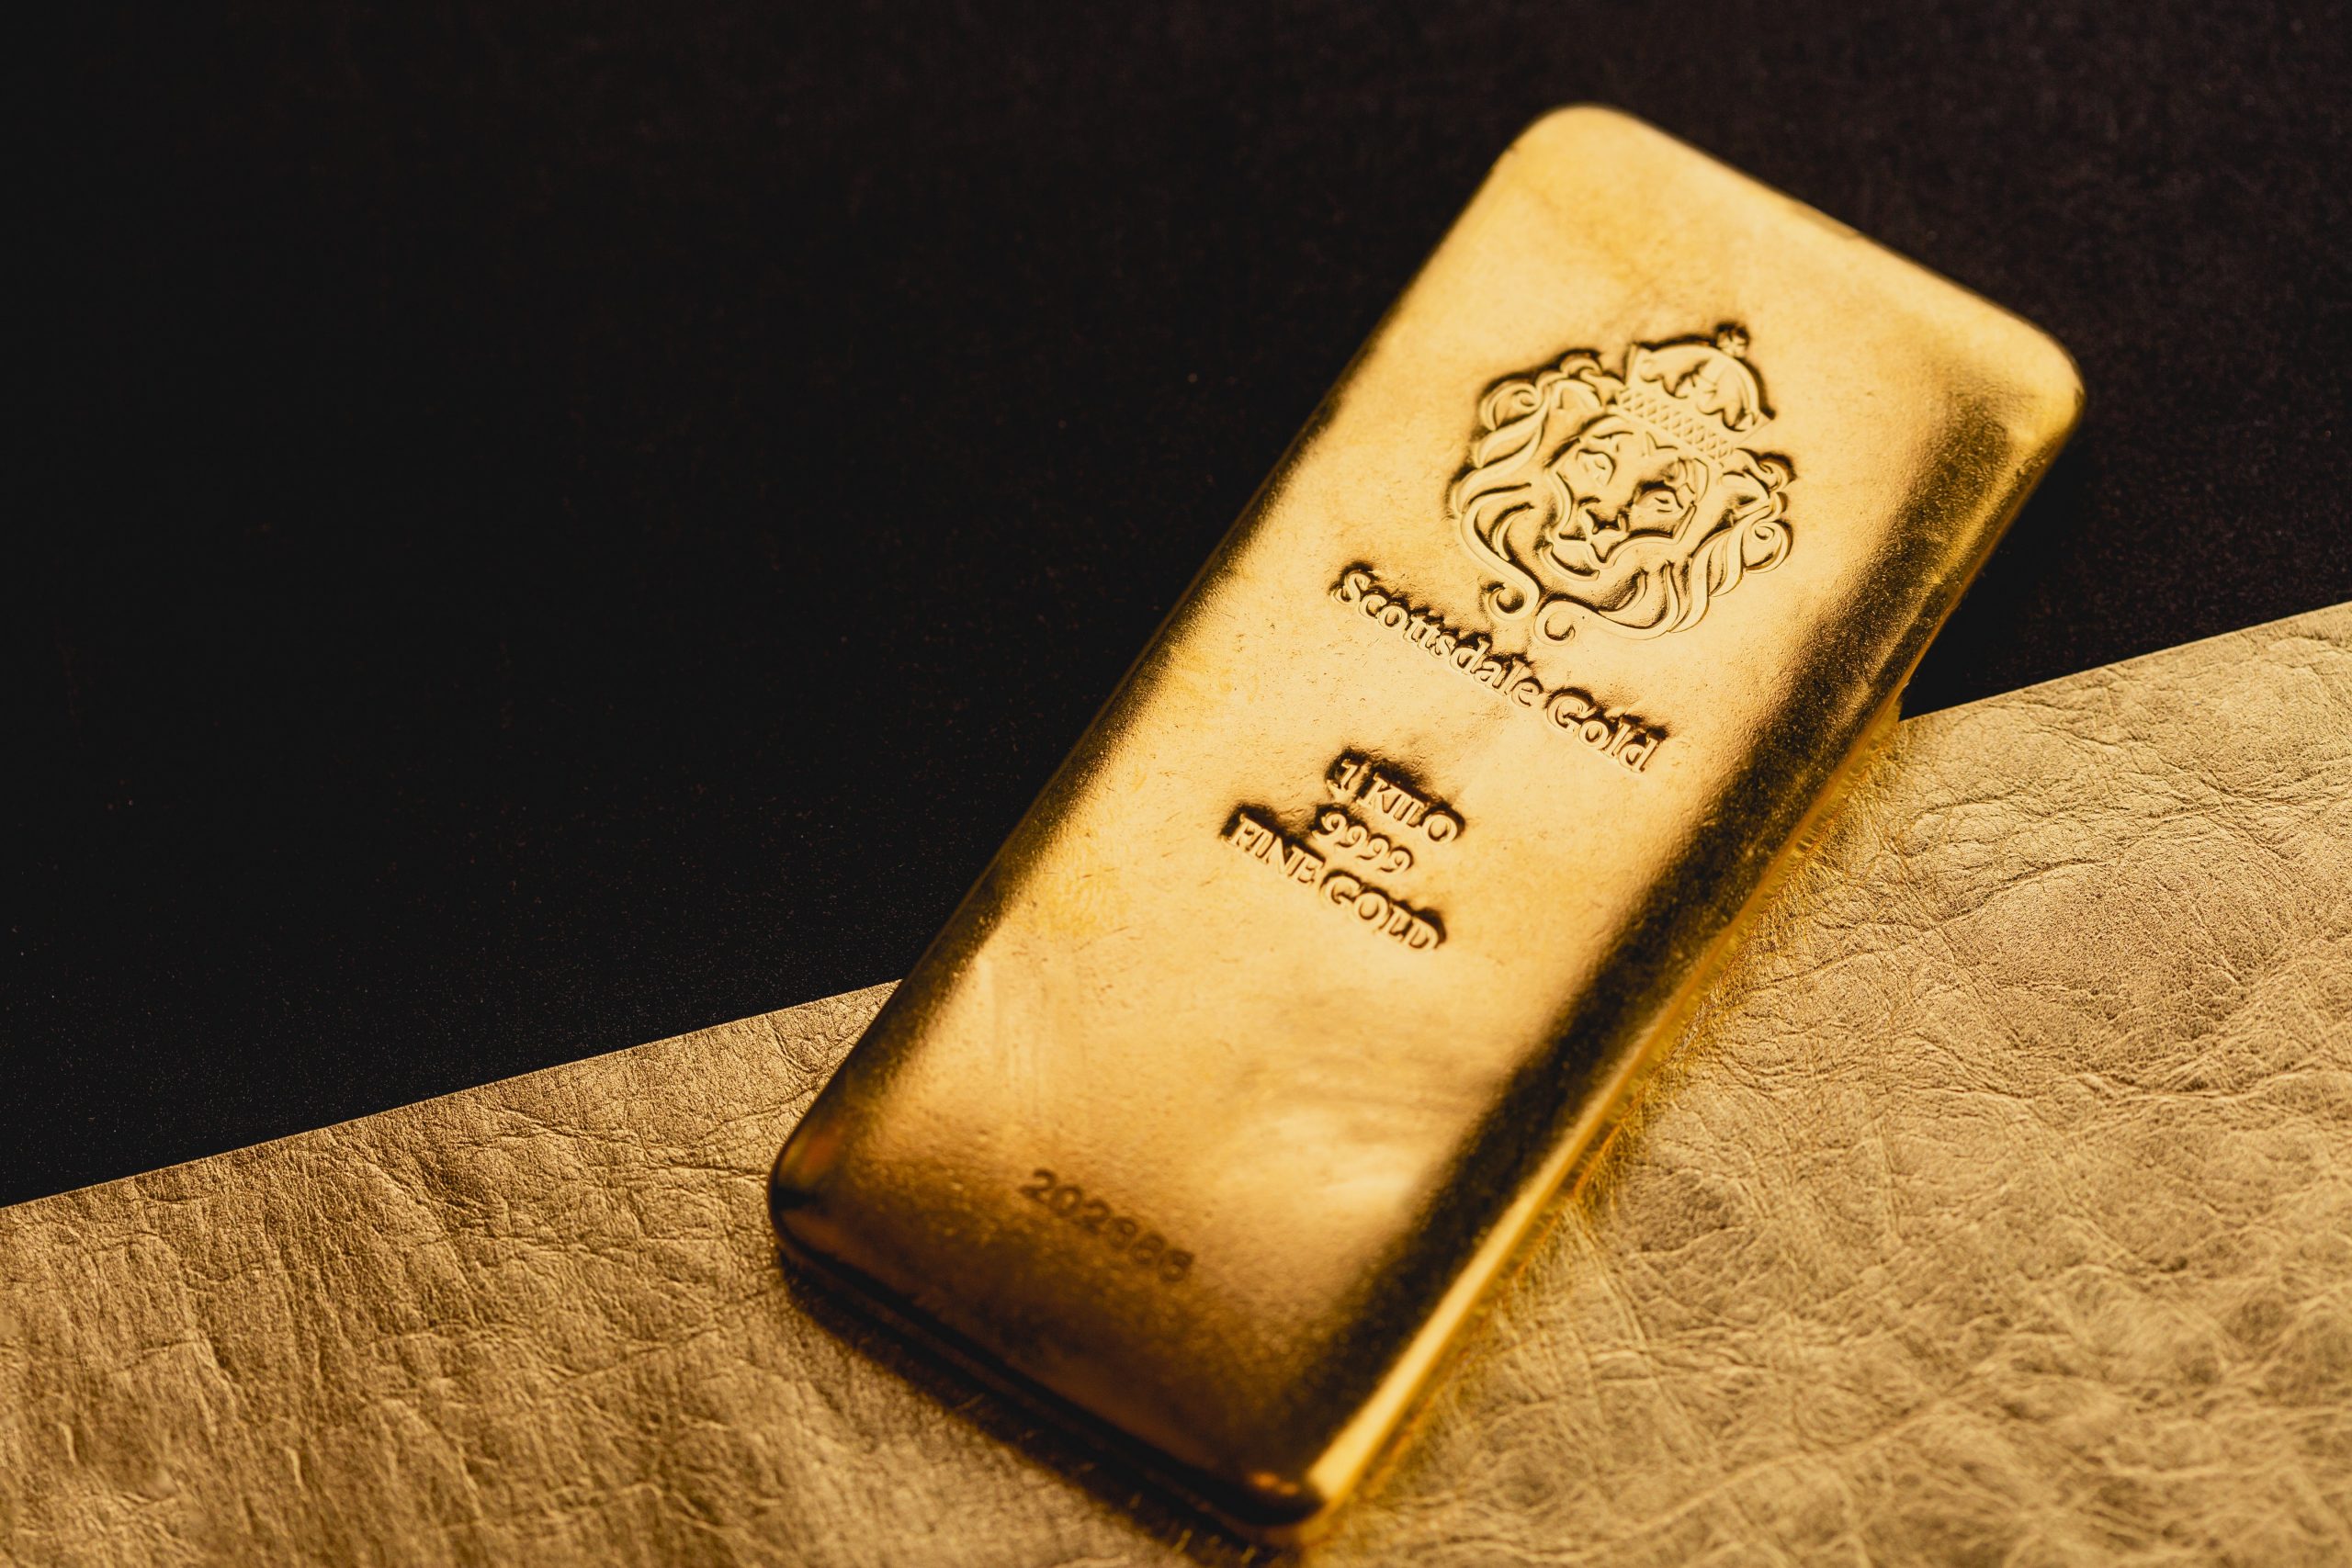 Keelholte Antecedent Psychologisch Persbericht - Is goud nog steeds een goede investering? | MT/Sprout